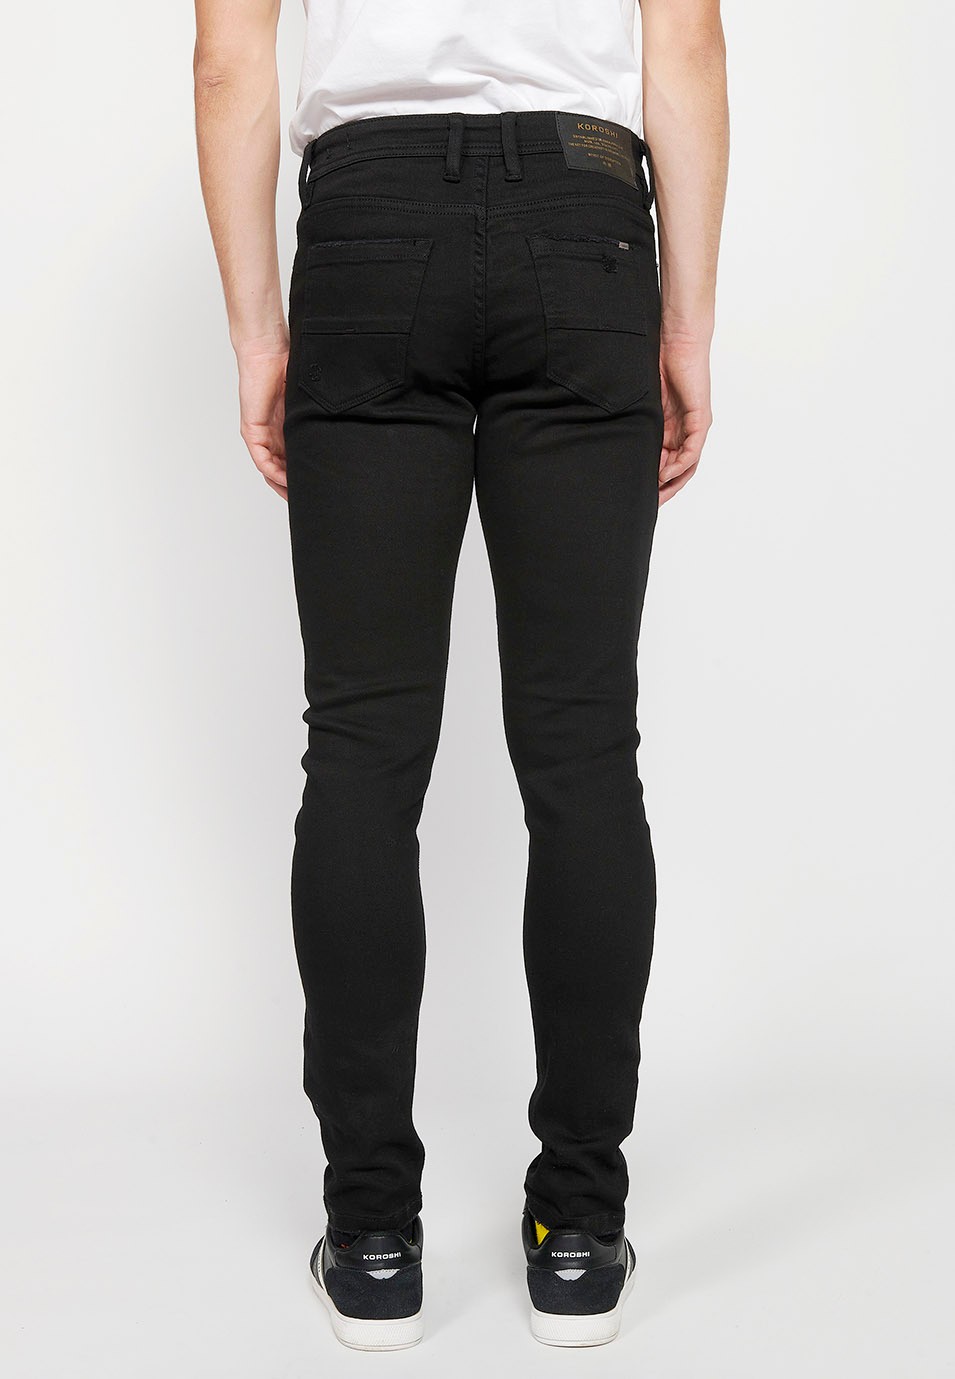 Lange, schmale Super-Skinny-Jeans mit Frontverschluss mit Reißverschluss und Knopf in schwarzer Denim-Farbe für Herren 4